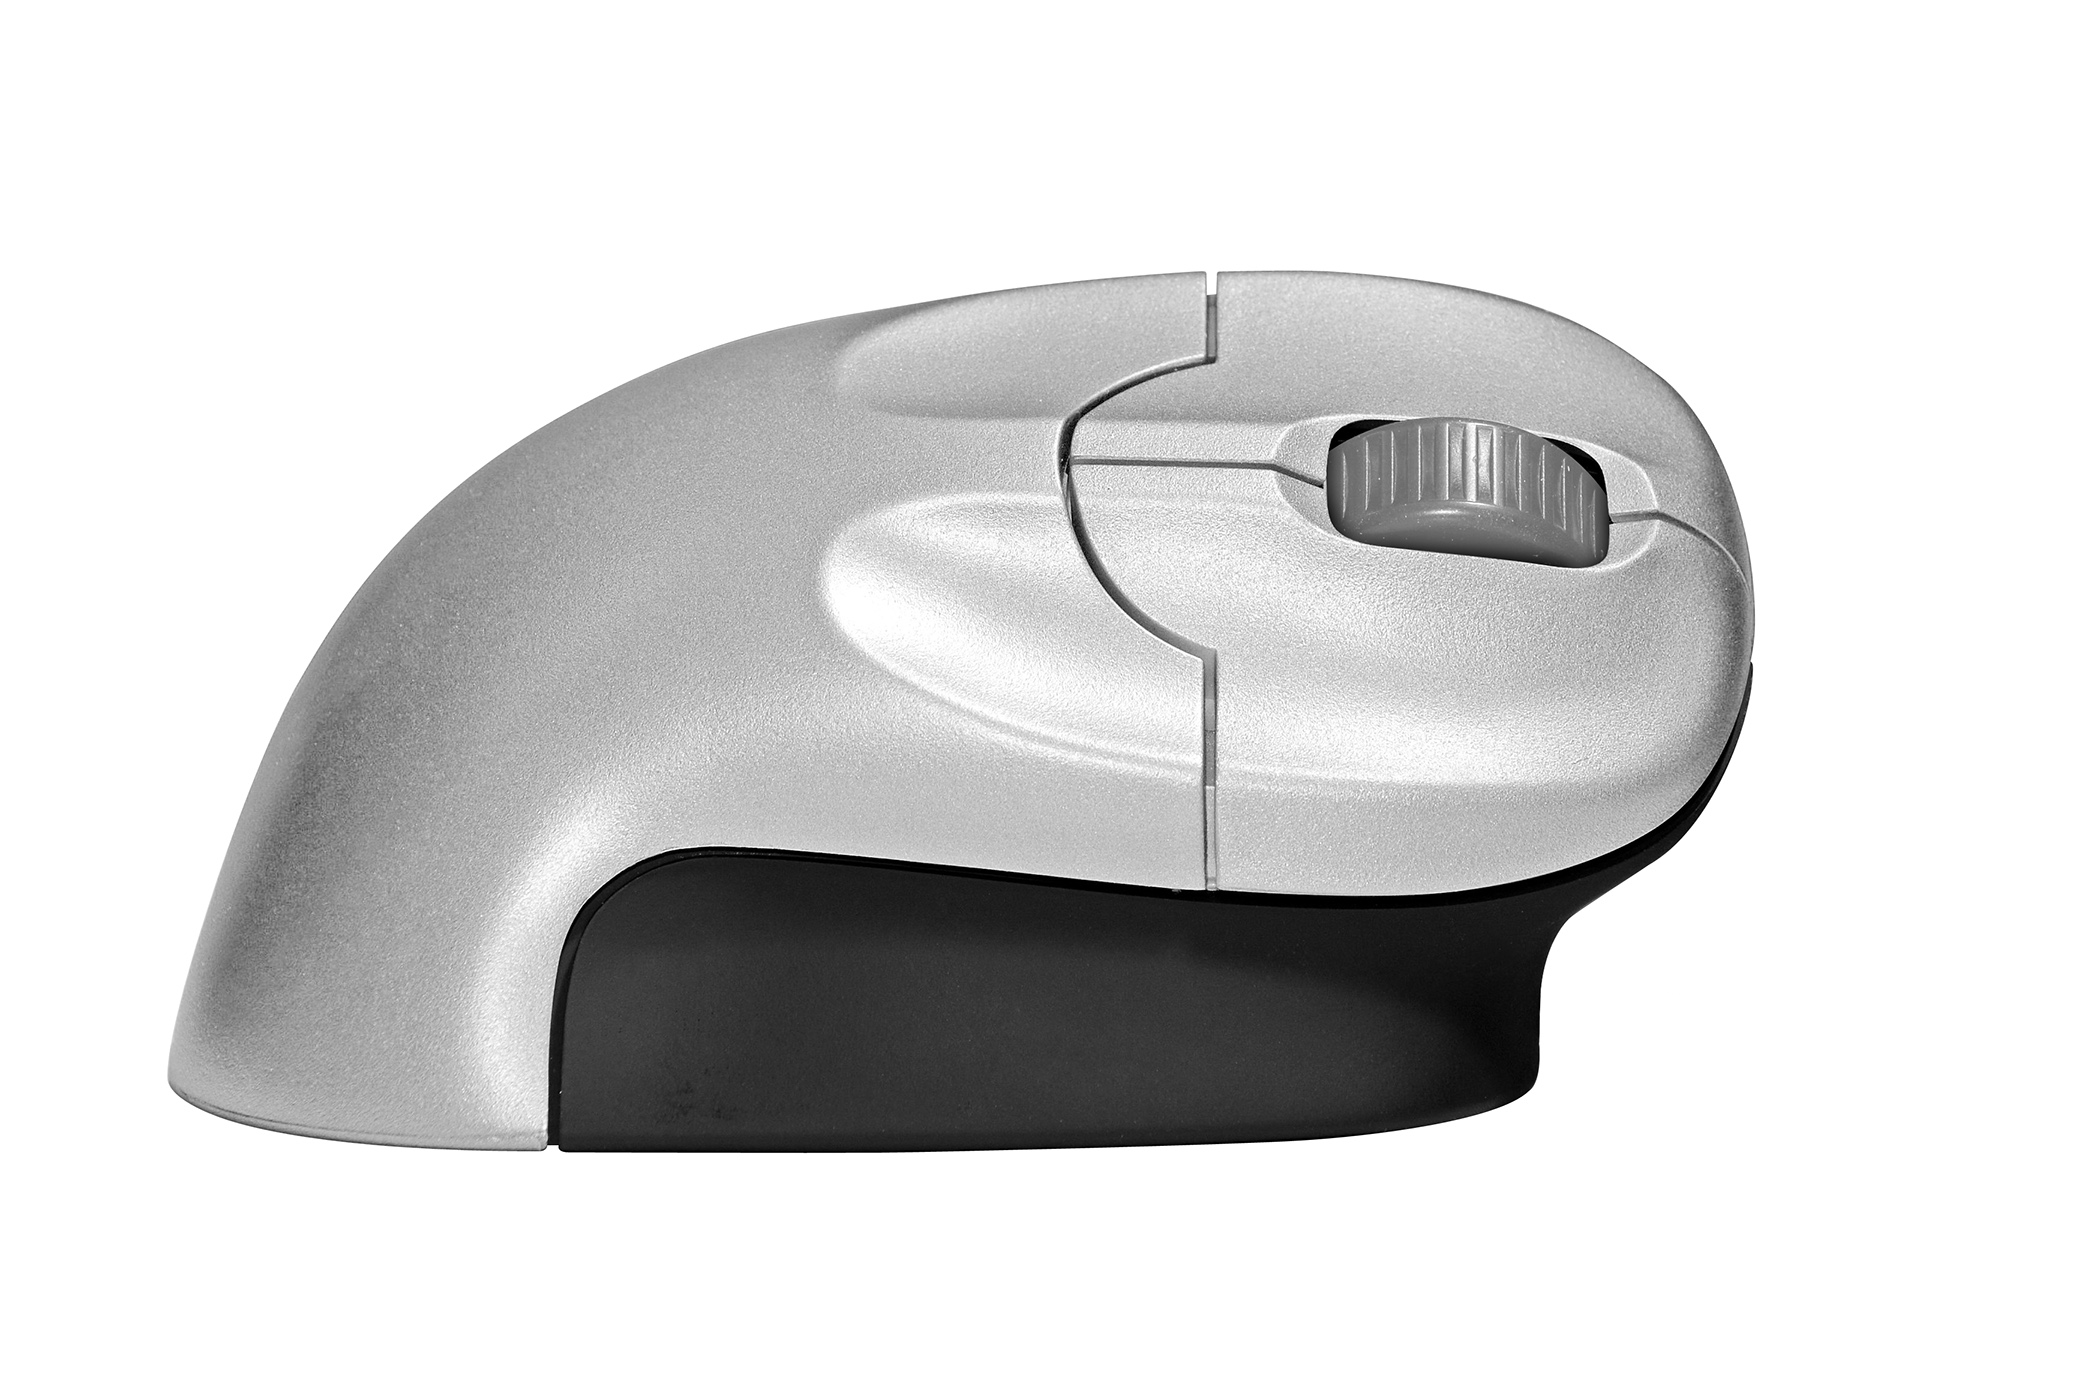 https://ergo-zen.fr/wp-content/uploads/2021/05/Grip-Mouse-Wireless-2.jpg